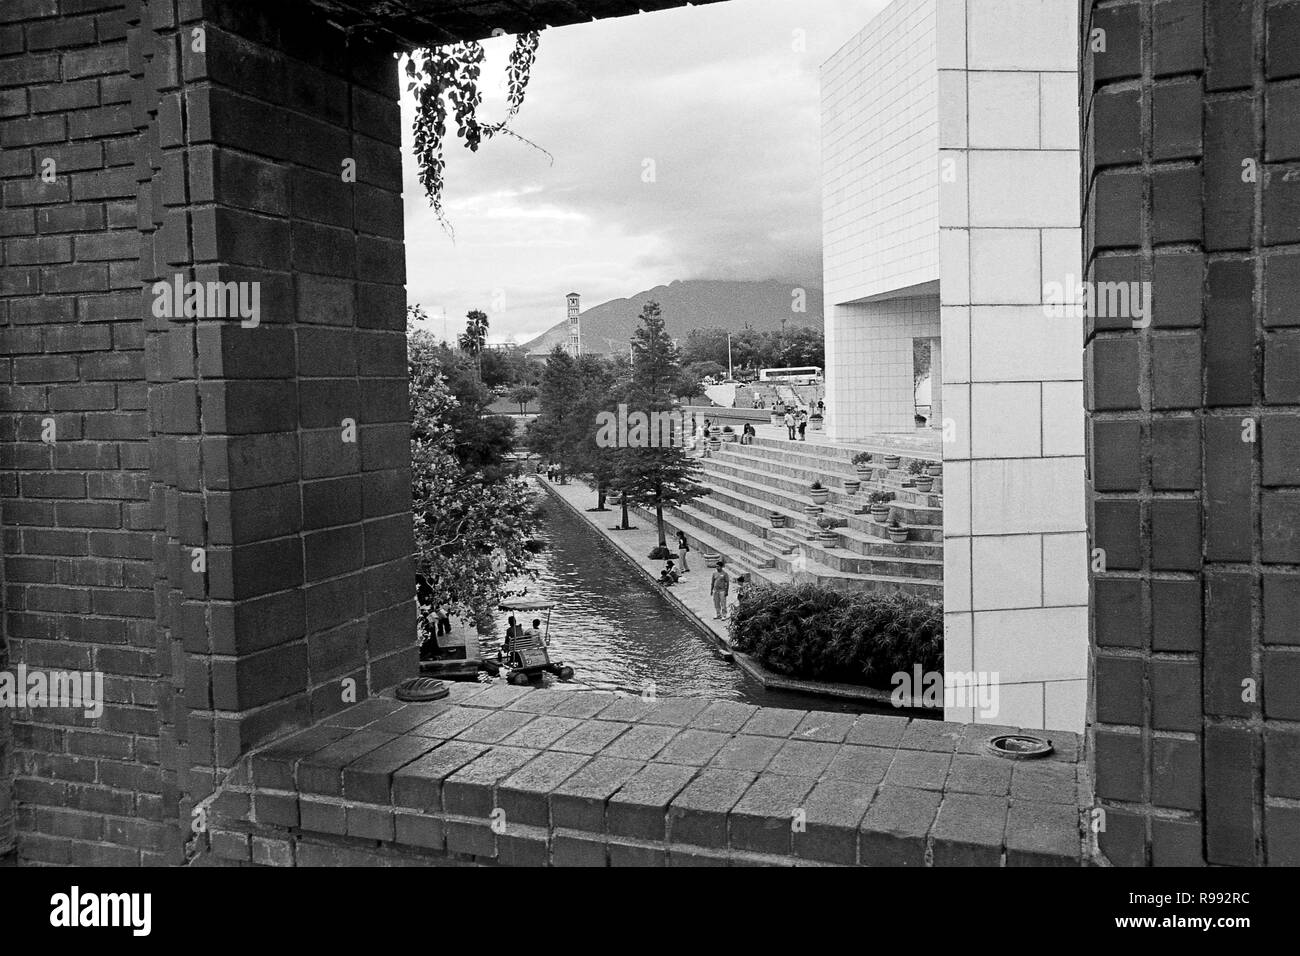 MONTERREY NL/MESSICO - Nov 10, 2003: Vista di Santa Lucia a piedi da una strada sopraelevata alle spalle del Museo della Storia Messicana Foto Stock